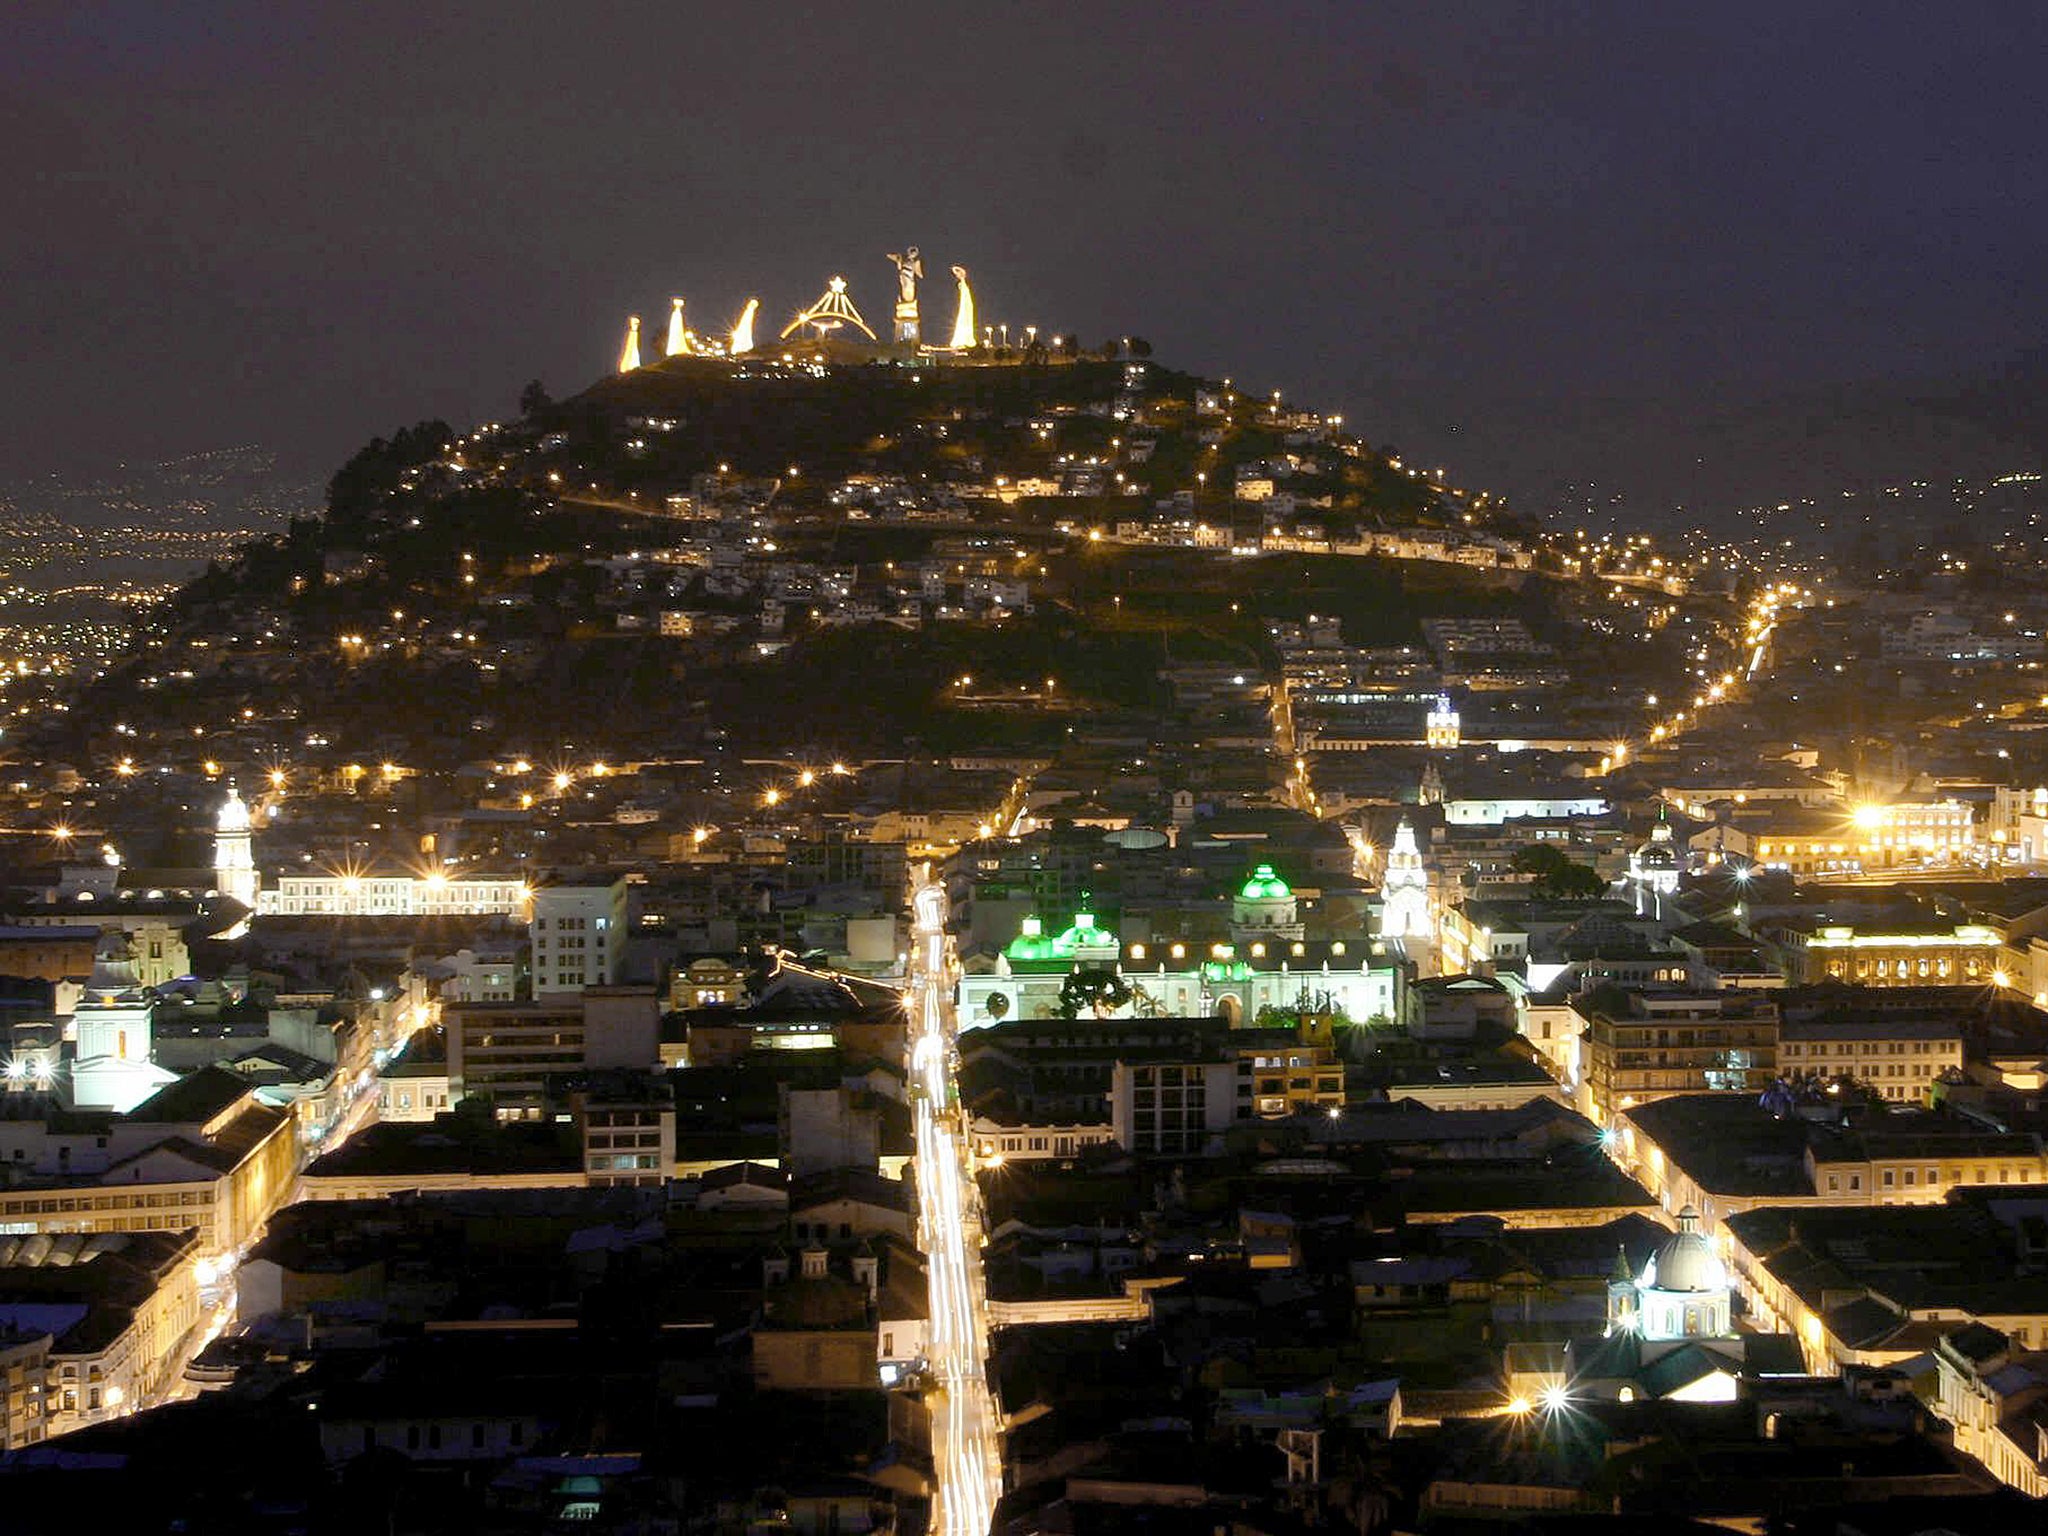 Quito, Ecuador's capital, at night